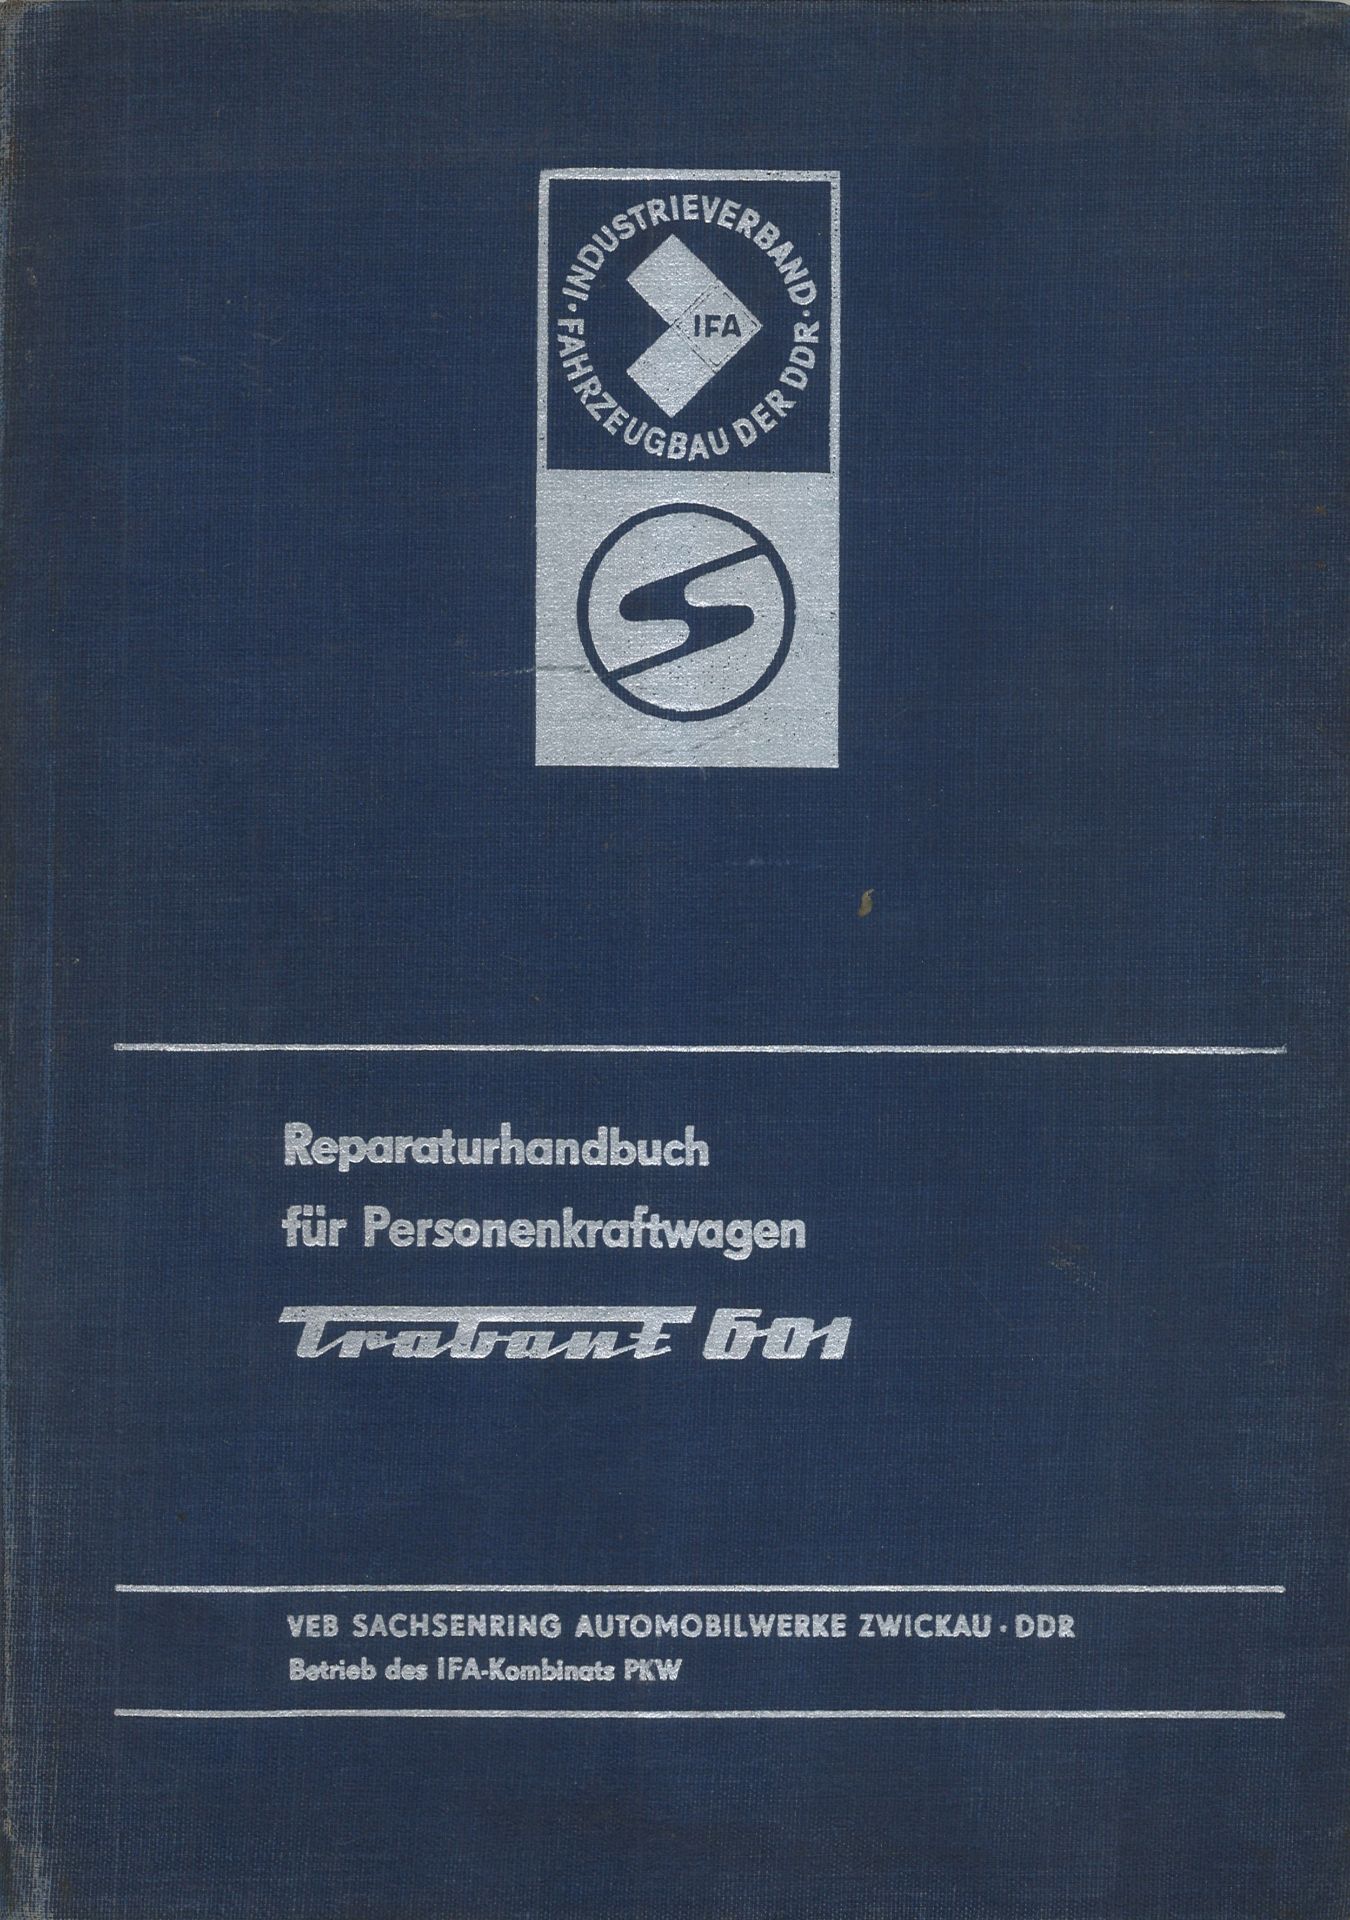 Aus Oldtimer Sammlung! Reperaturhandbuch für Personenkraftwagen "Trabant 601" Mit 224 Bildern, 17.